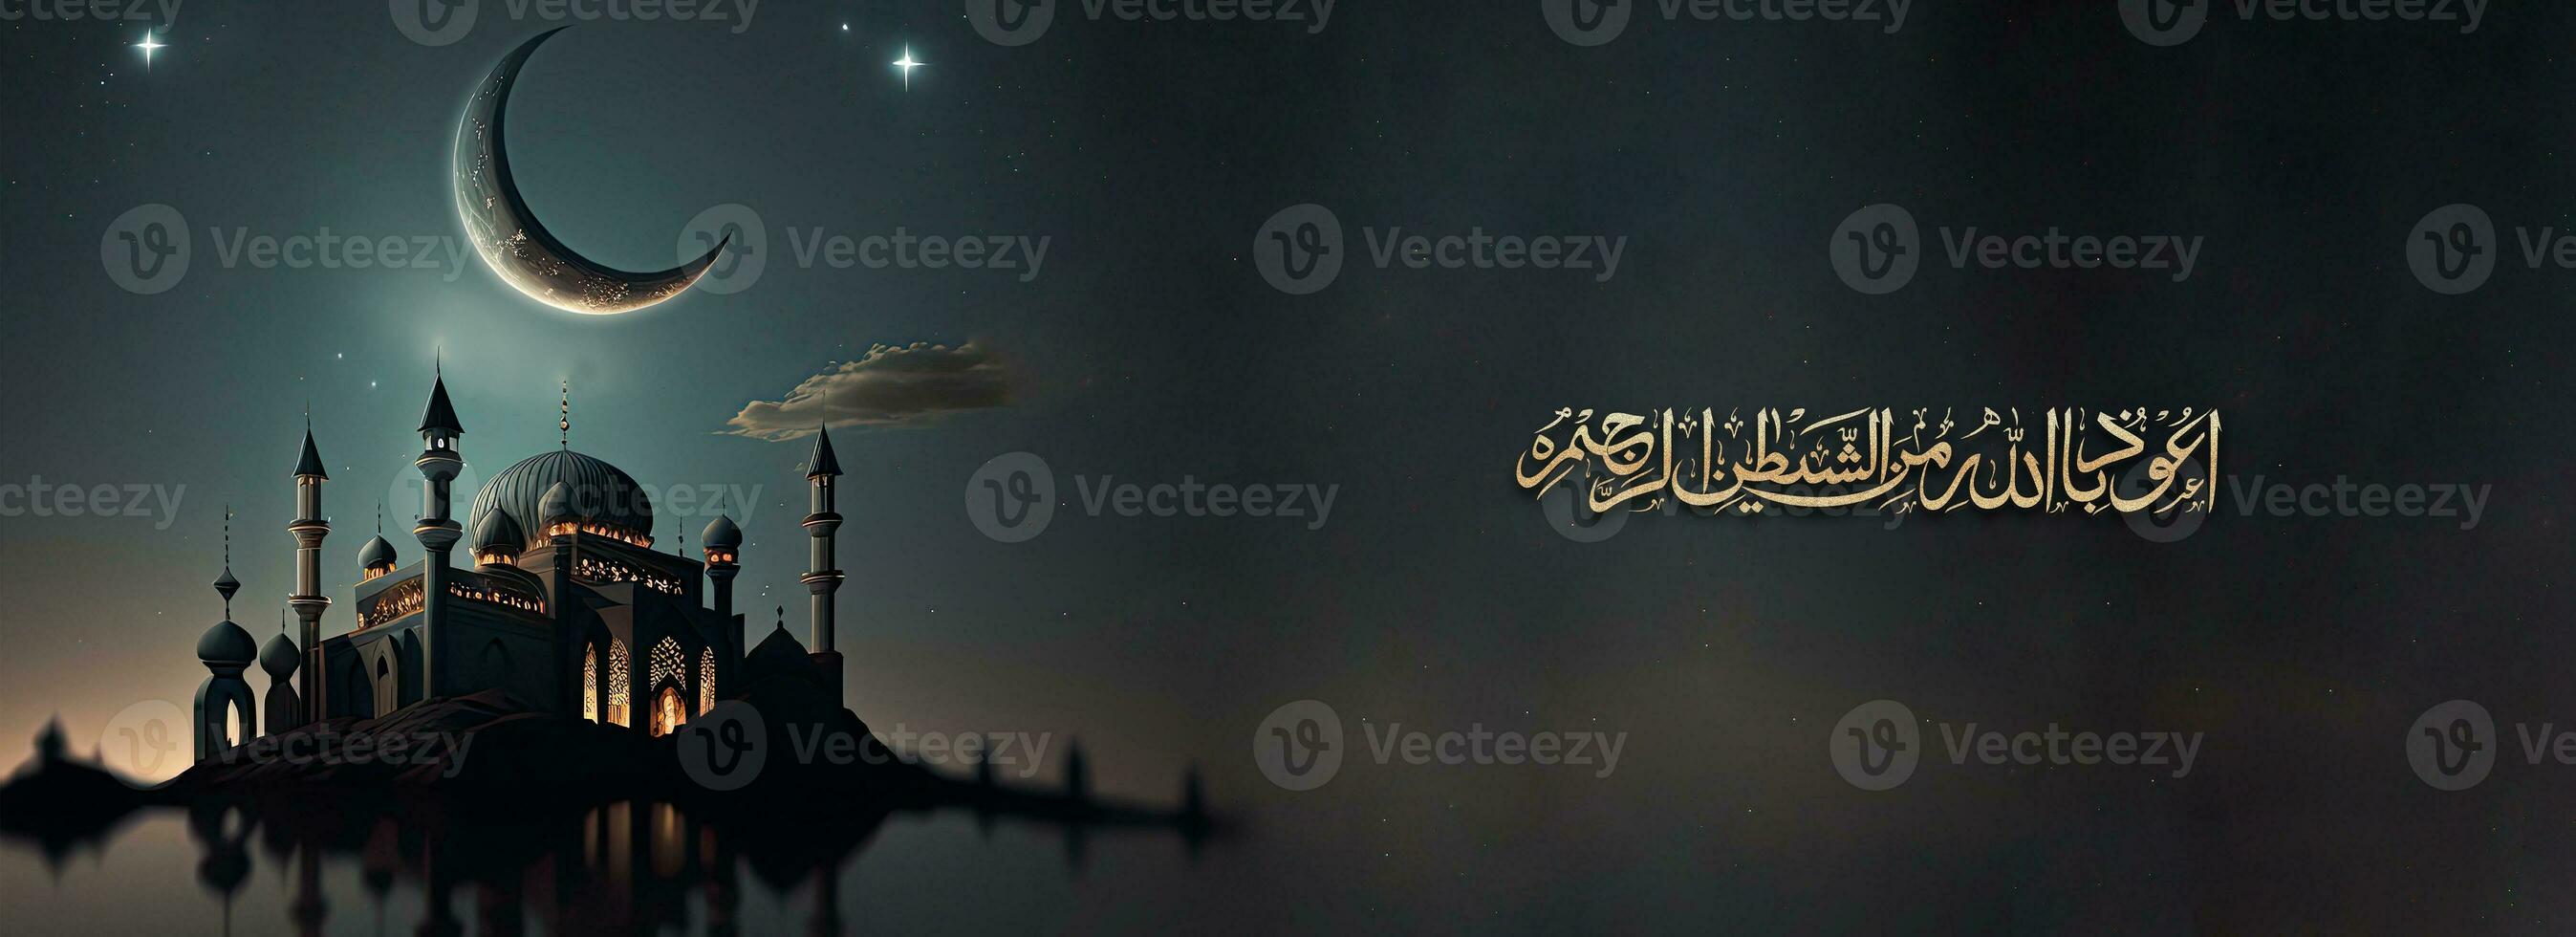 gouden glitterachtig Arabisch Islamitisch schoonschrift van wens angst van Allah brengt intelligentie, eerlijkheid en liefde en 3d geven van moskee, halve maan maan nacht achtergrond. foto